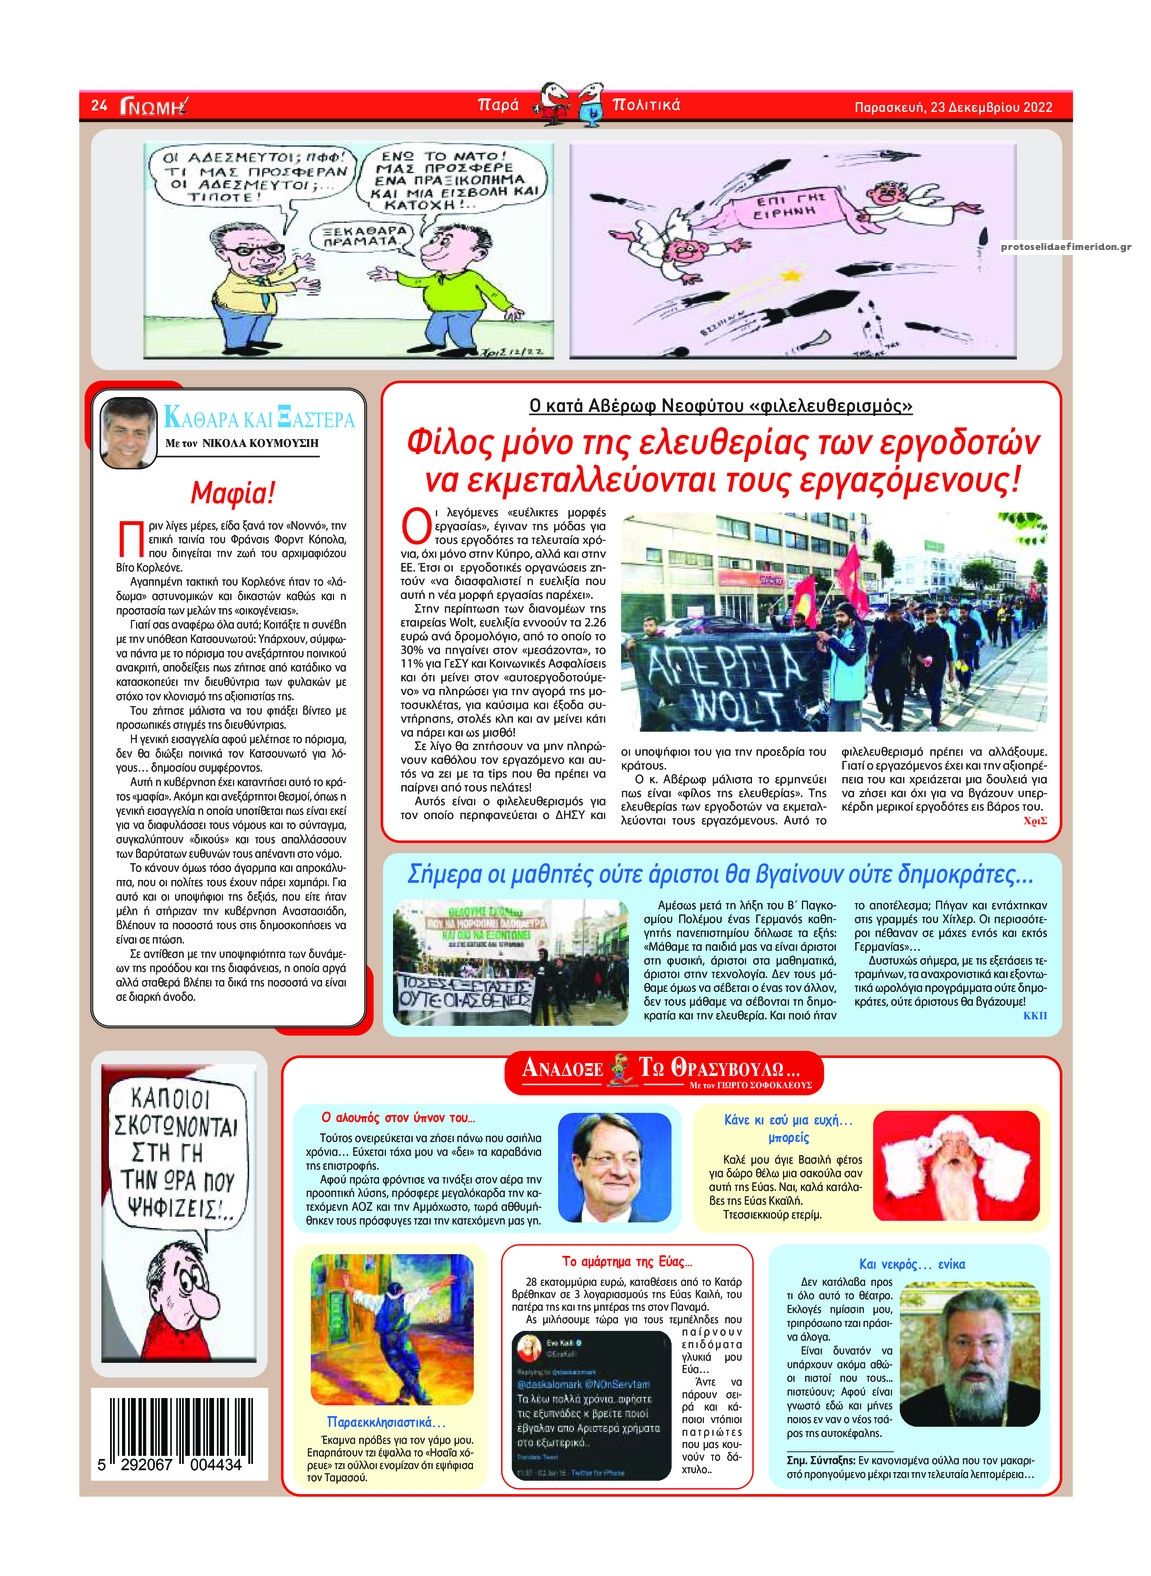 Οπισθόφυλλο εφημερίδας Γνώμη Κύπρου